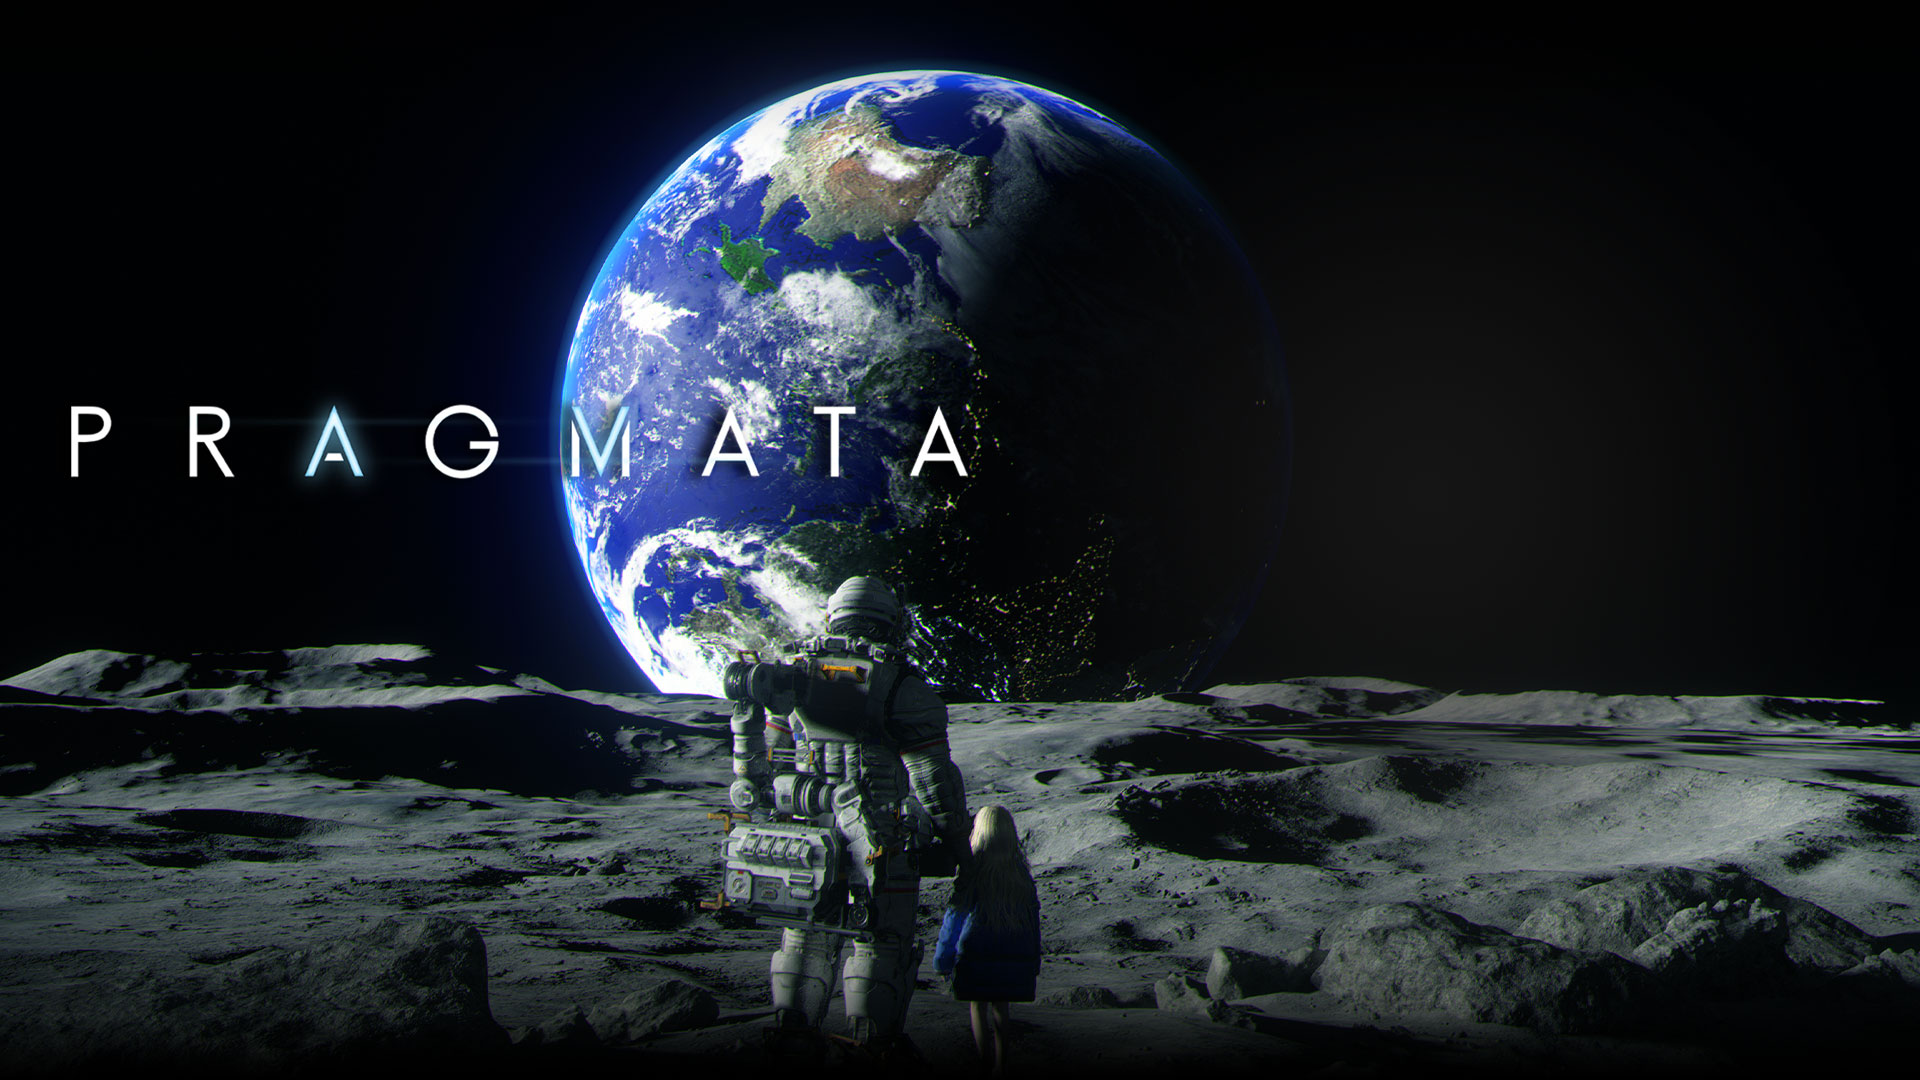 Pragmata, um astronauta e uma rapariga jovem olham para a Terra enquanto estão juntos na lua